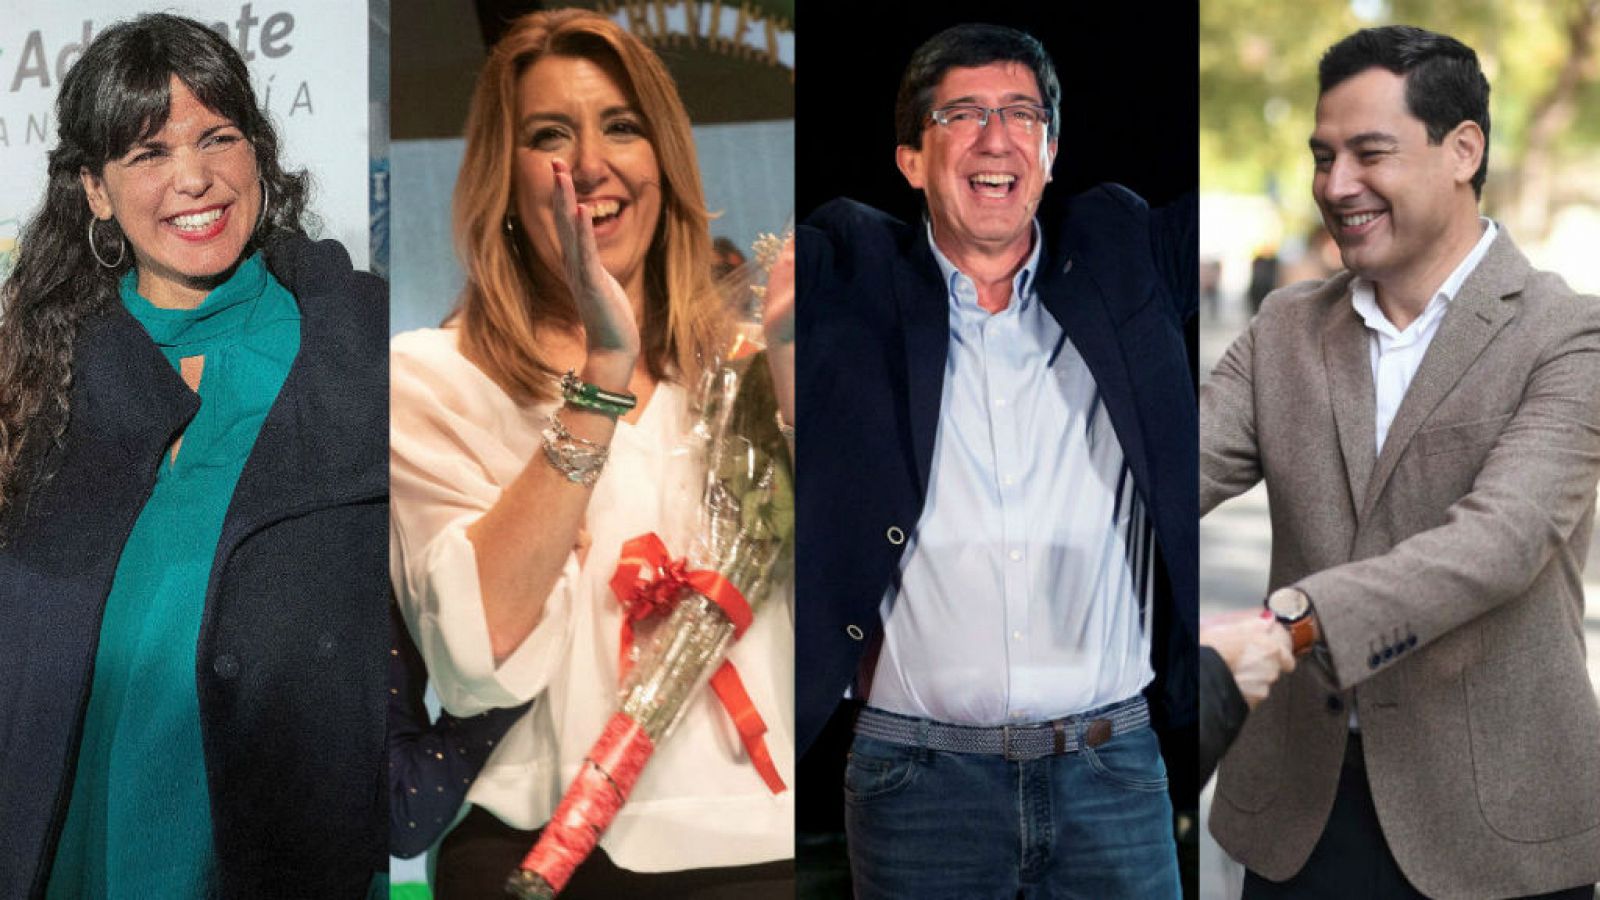 14 horas - Arranca la campaña en Andalucía con la vista puesta en los pactos - Escuchar ahora